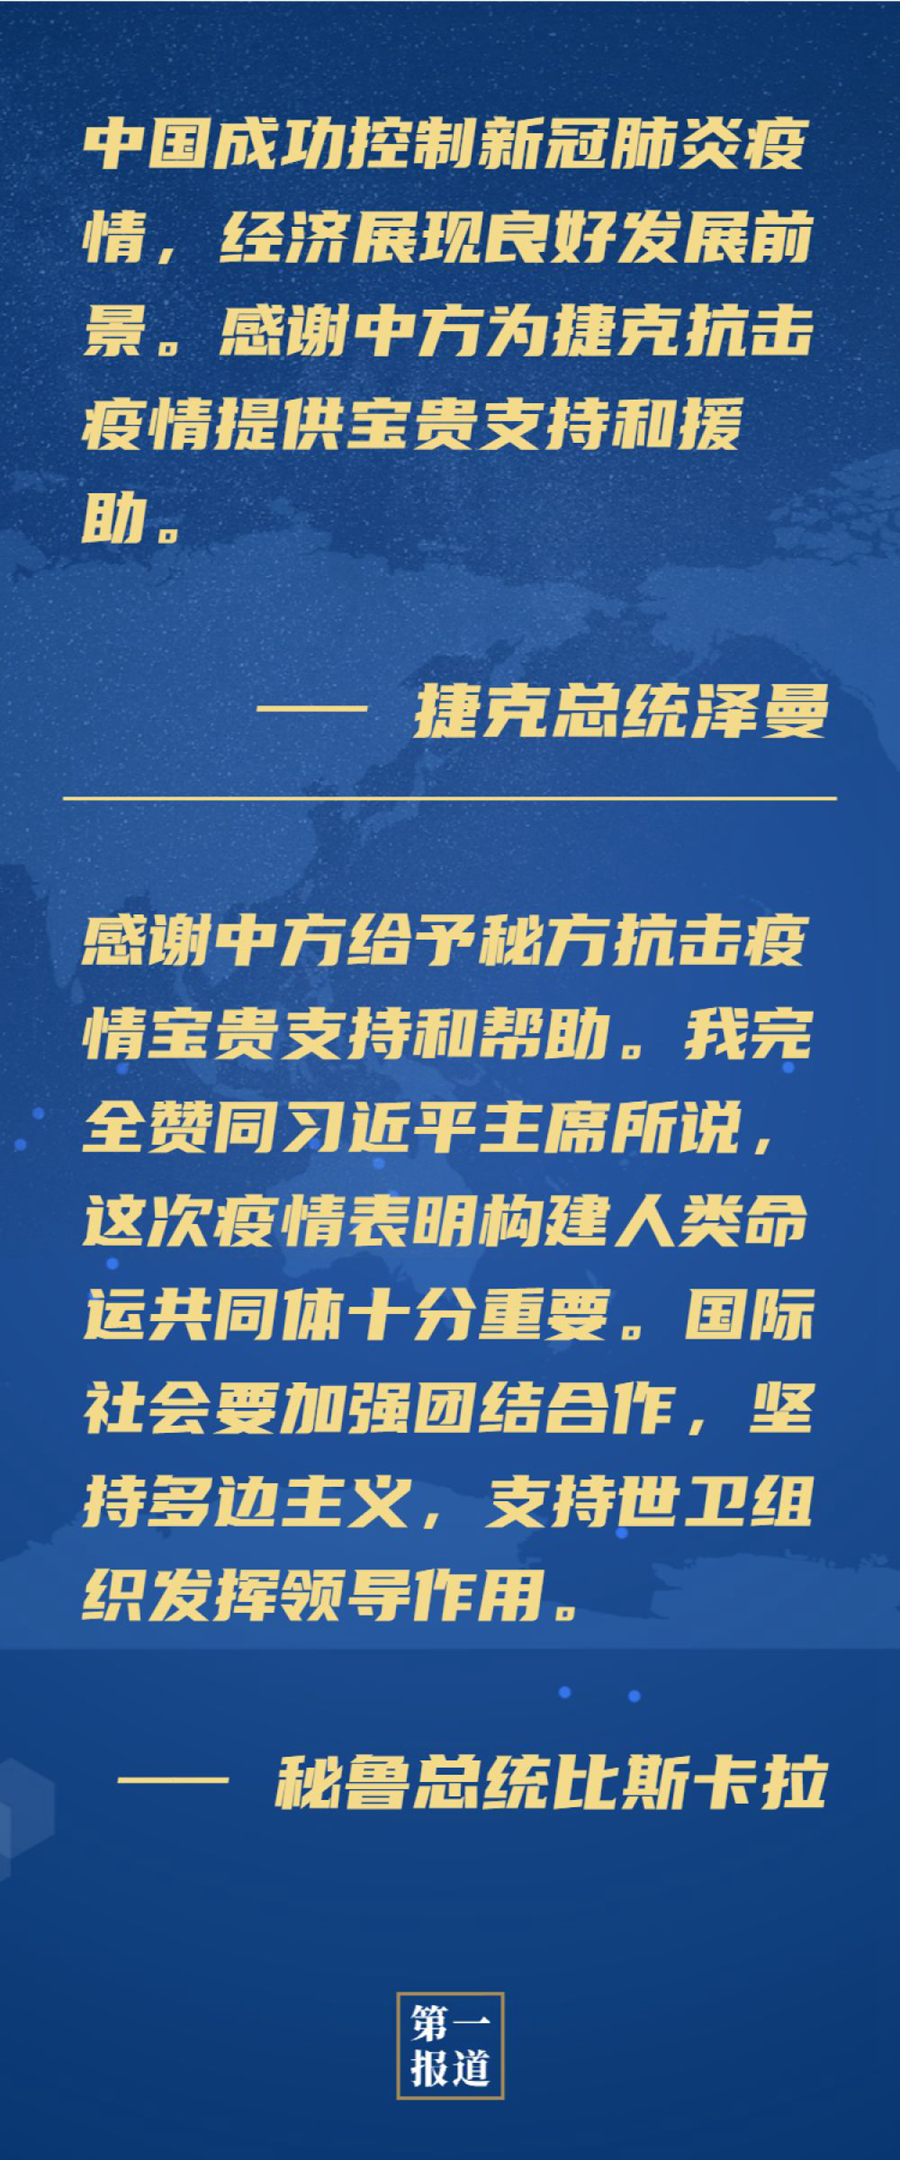 中国外交部避谣美国说白了中国人民解放军SARS內部文档